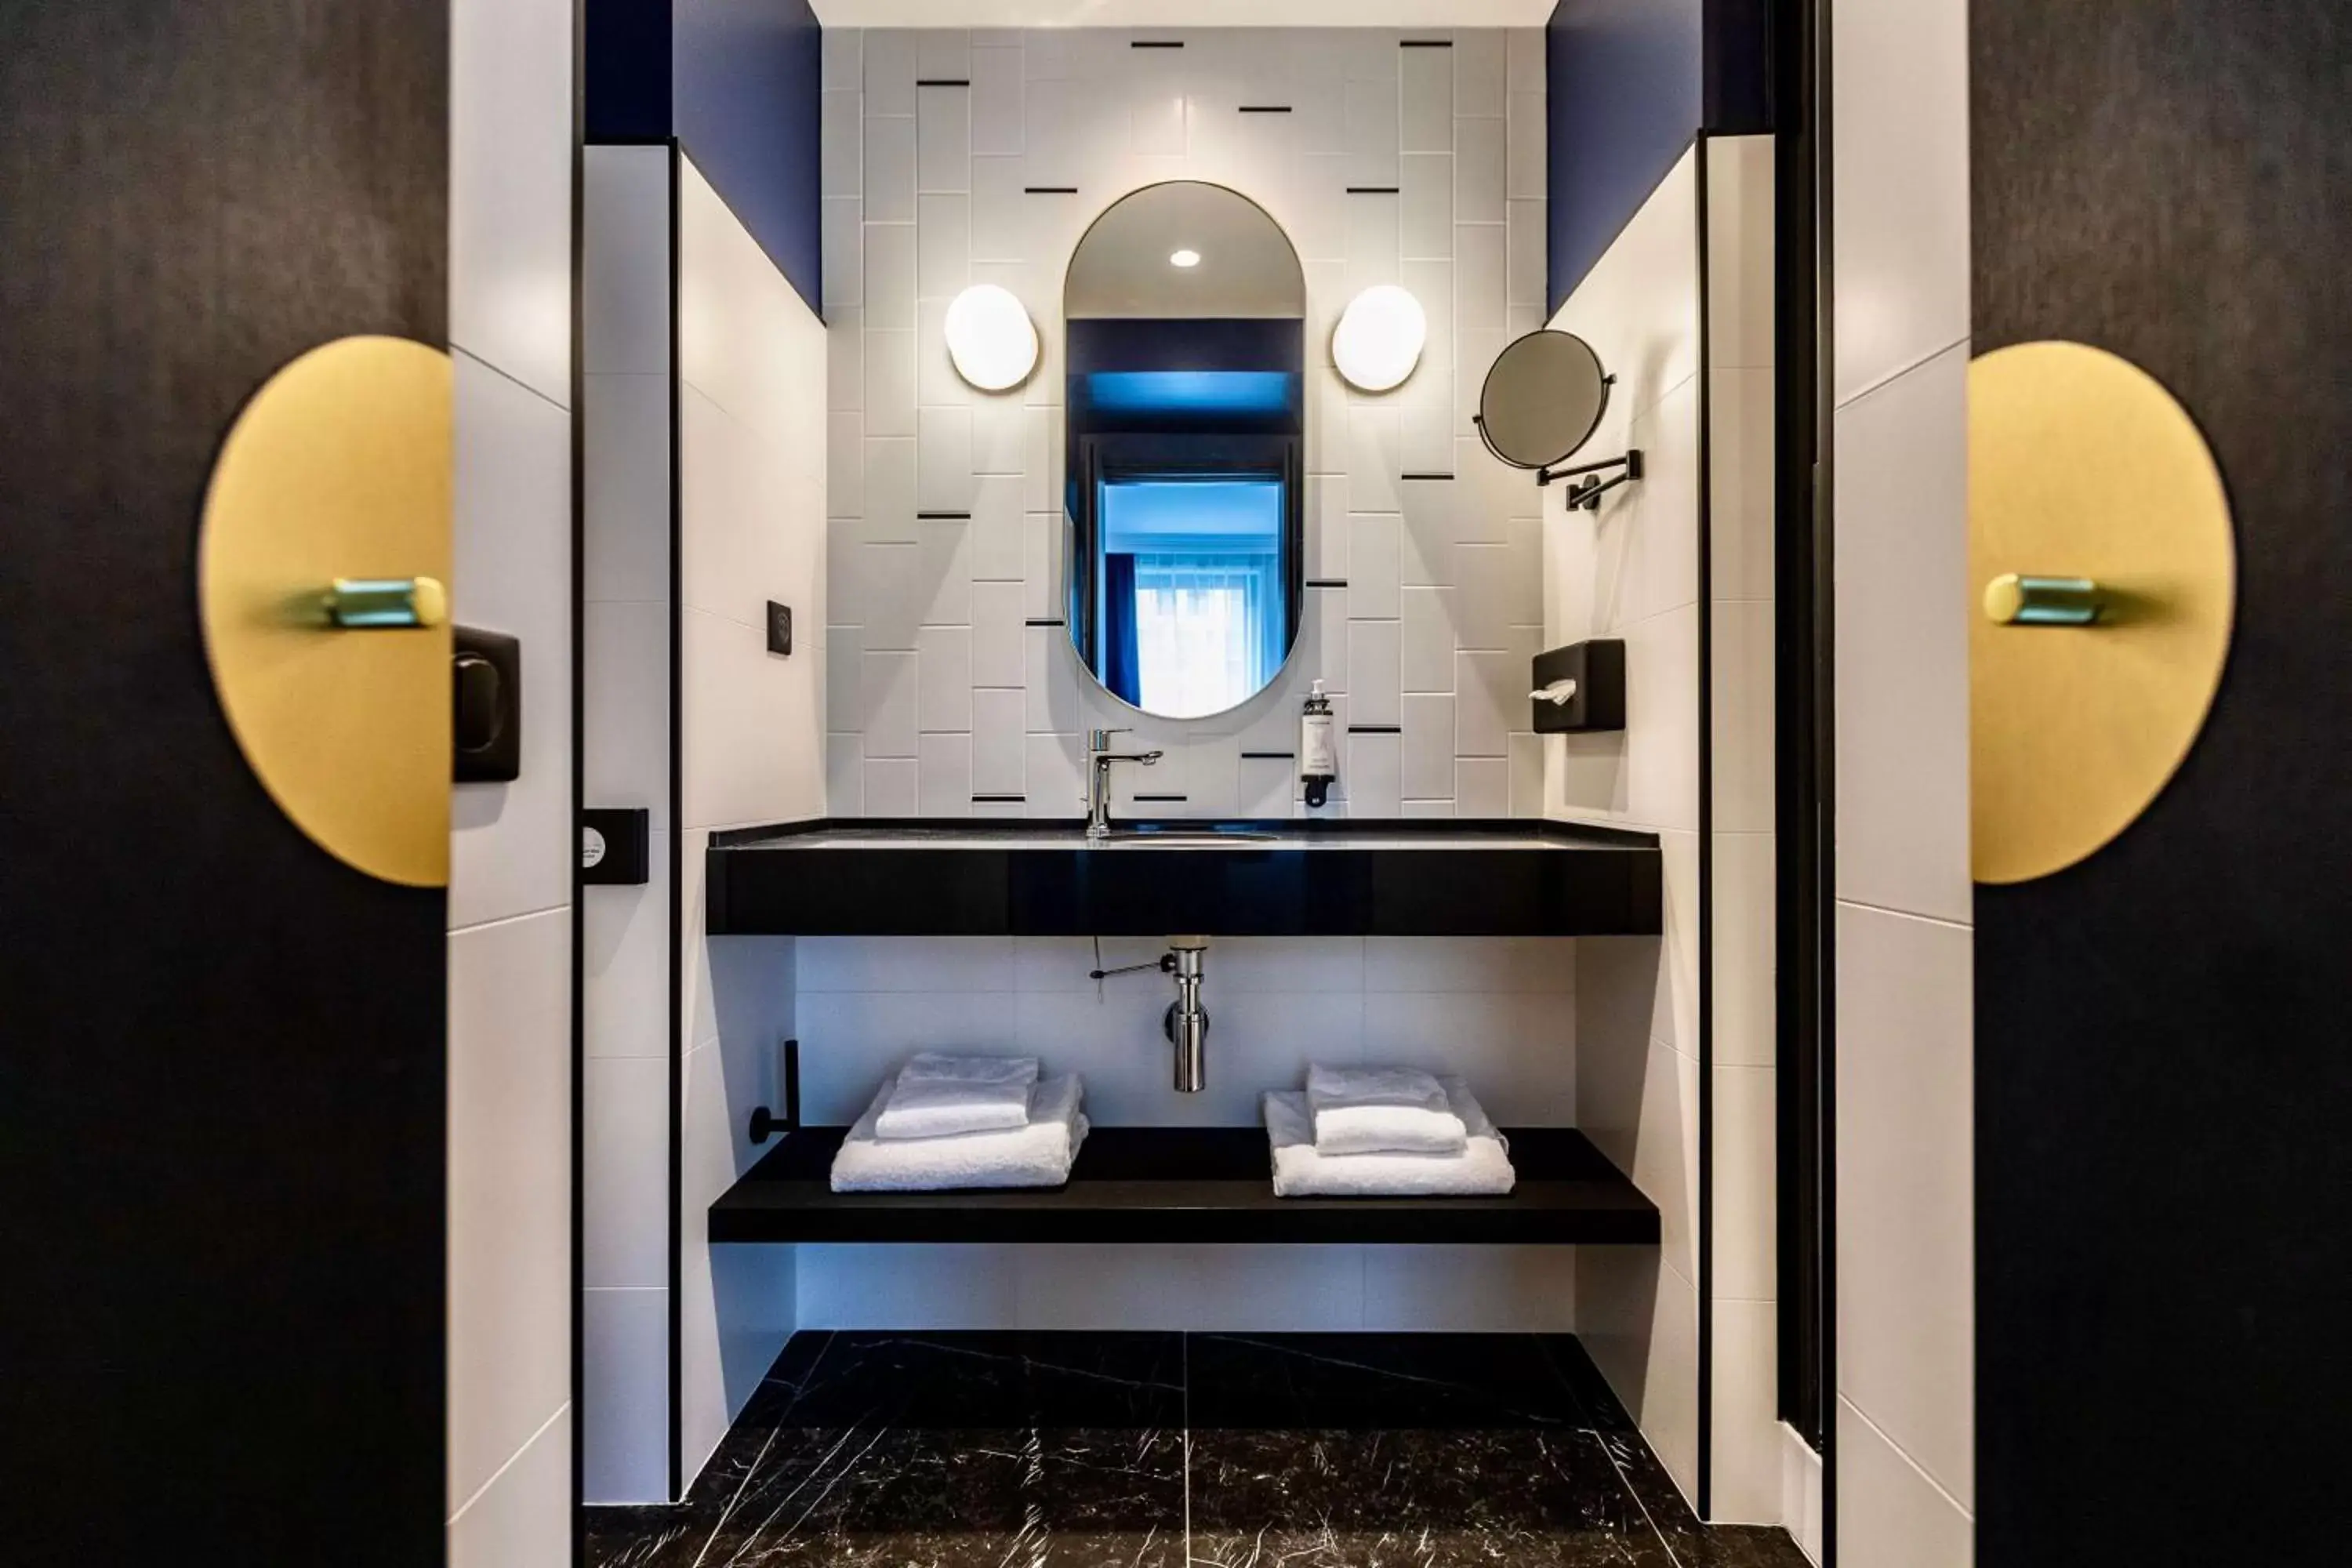 Bathroom in Best Western Plus Crystal, Hotel & Spa